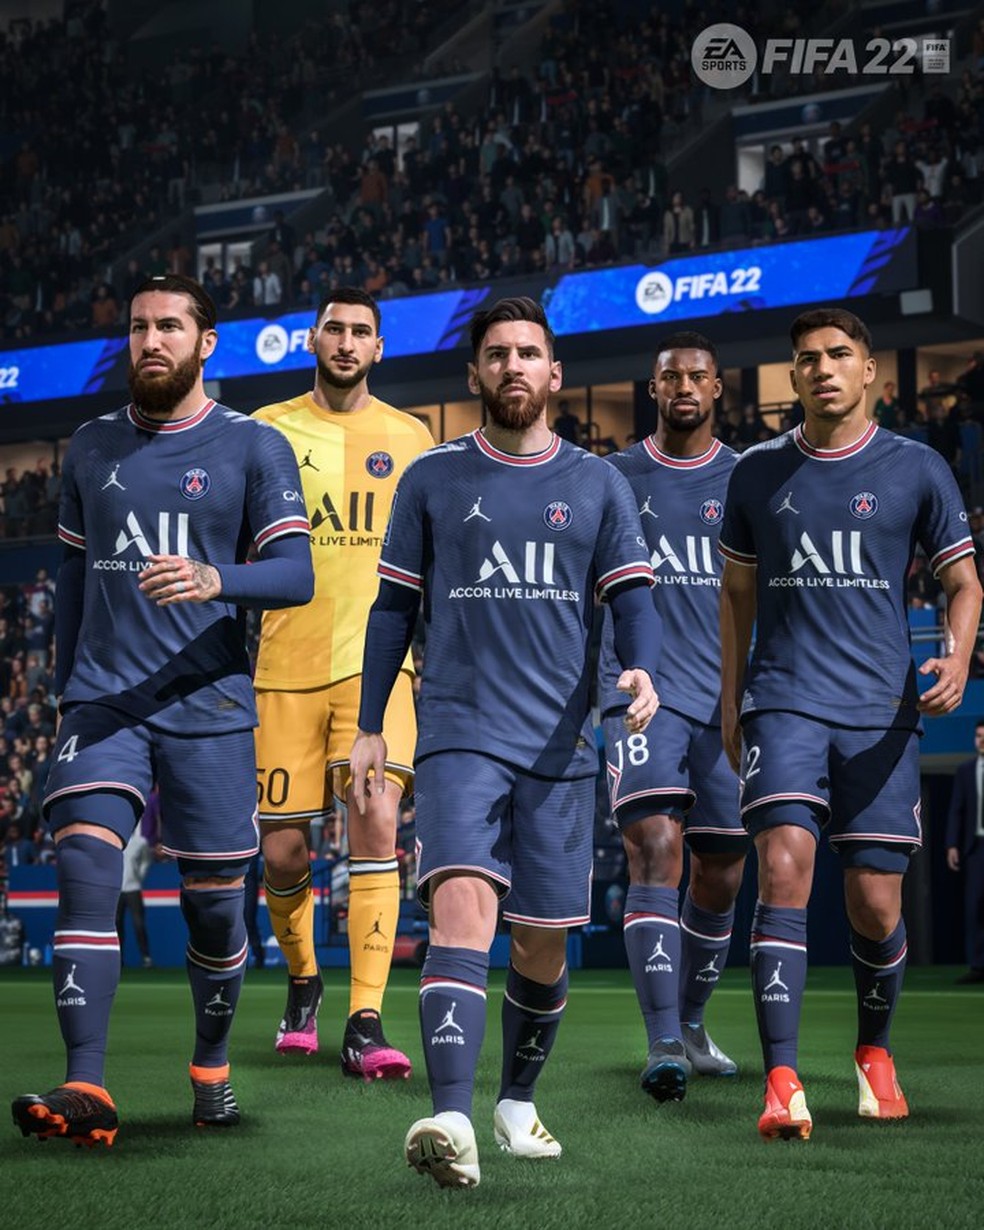 FIFA 22: Confira como seria um time com as maiores promessas do